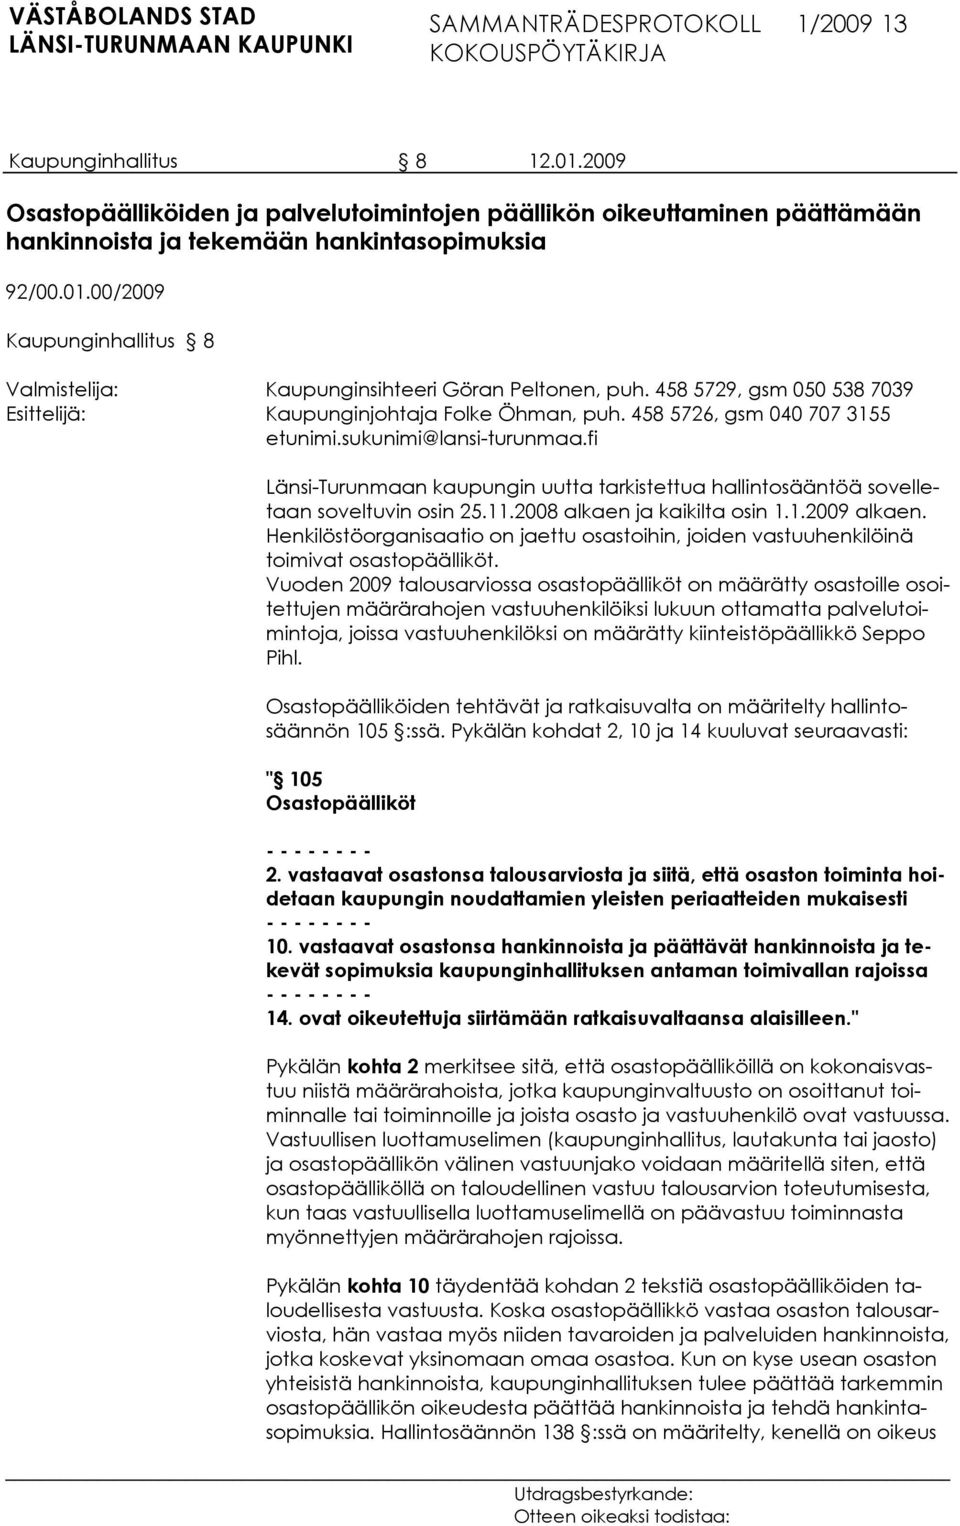 fi Länsi-Turunmaan kaupungin uutta tarkistettua hallintosääntöä sovelletaan soveltuvin osin 25.11.2008 alkaen ja kaikilta osin 1.1.2009 alkaen.